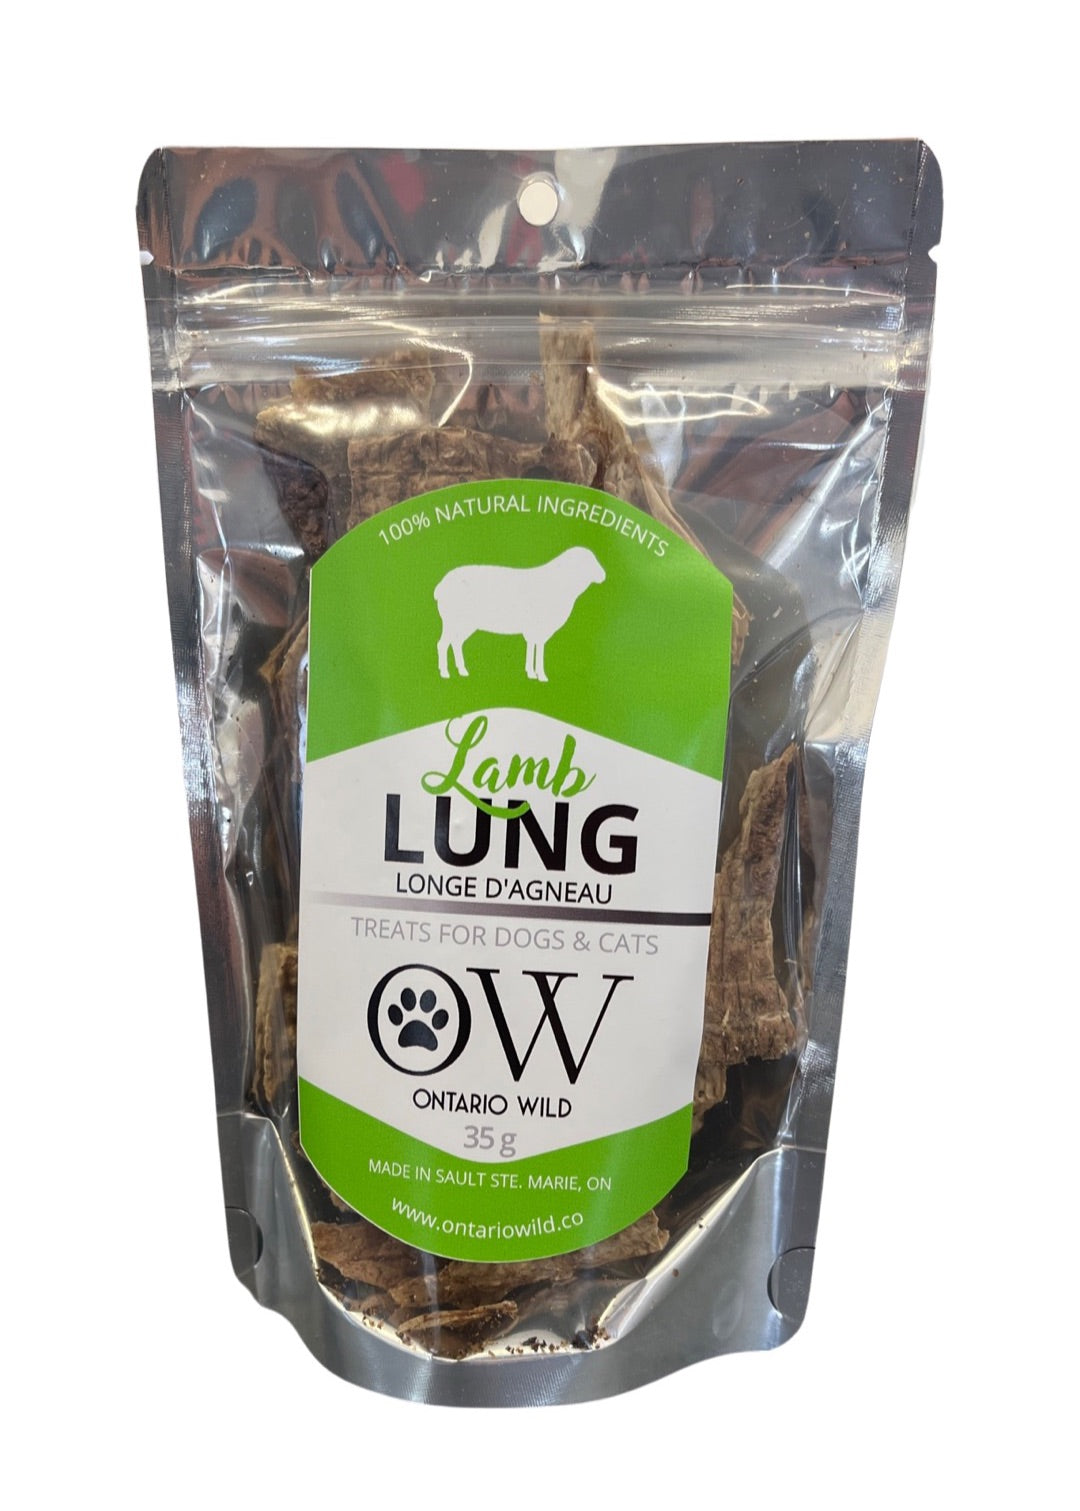 Lamb lung - 35 g - Ontario Wild Pet Shop